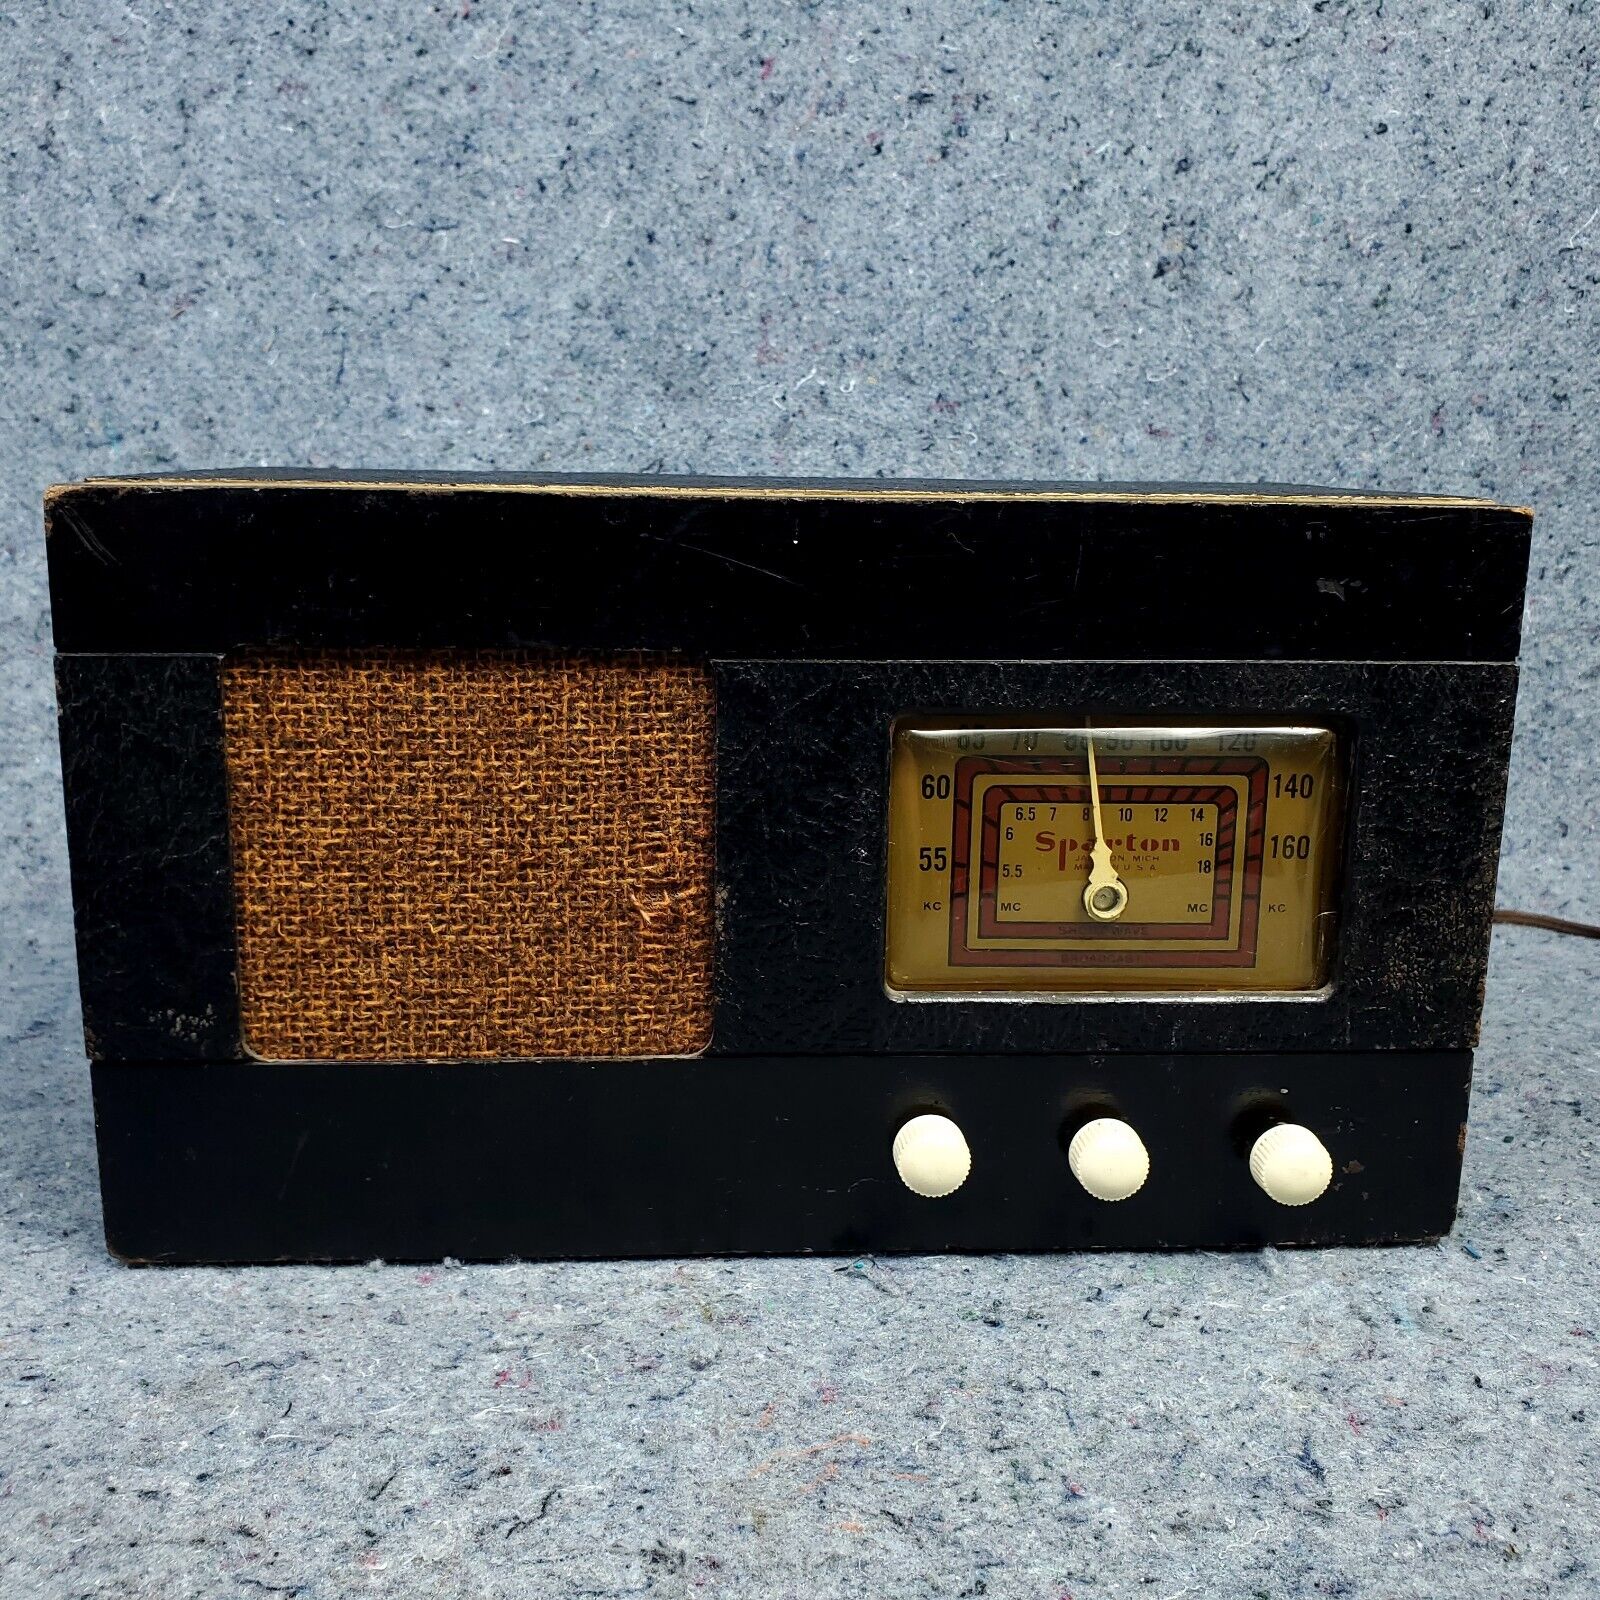 Sparton Tube Radio AM Table Black Leatherette Vintage Works But Has HUM